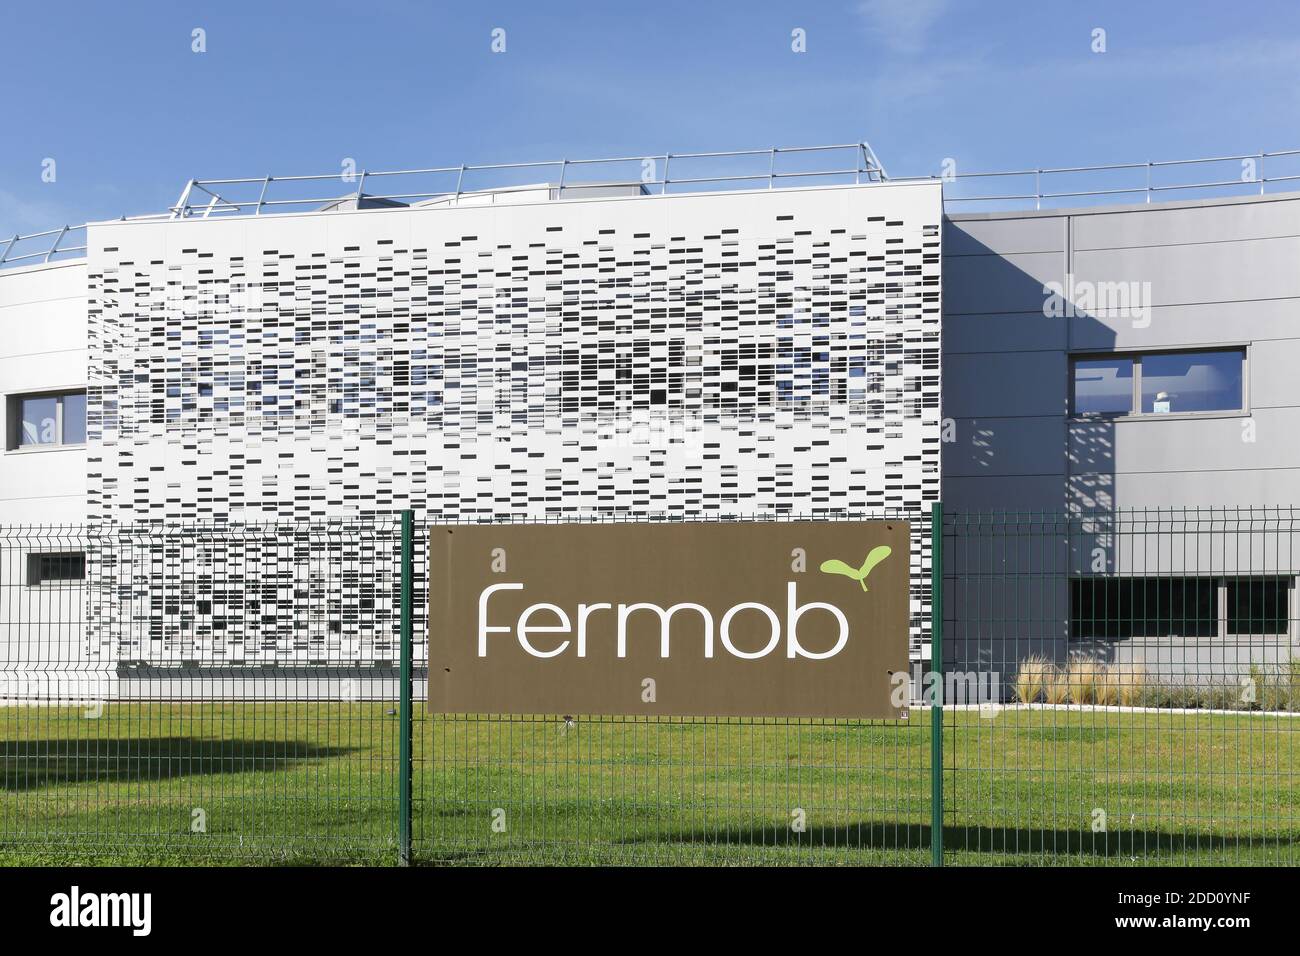 Thoissey, Frankreich - 5. Oktober 2017: Fermob Fabrik und Bürogebäude. Fermob ist ein französisches Unternehmen, das Outdoor-Möbel entwirft und herstellt Stockfoto